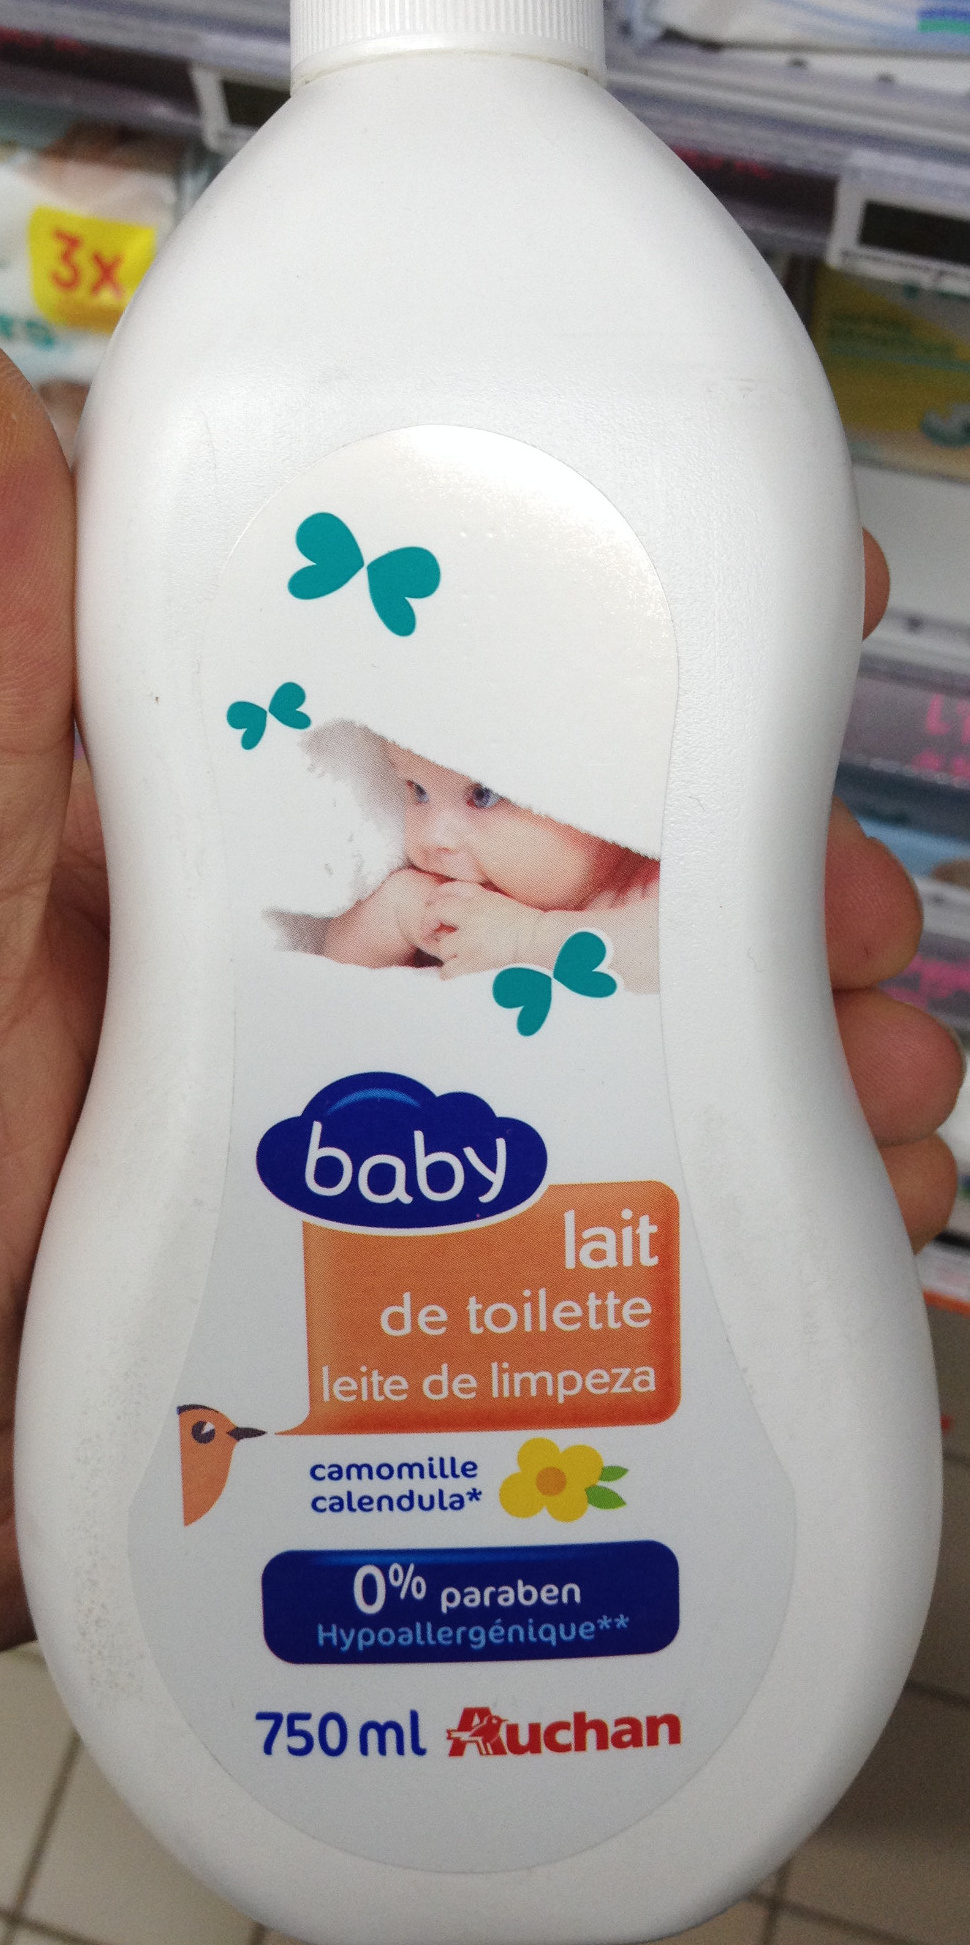 Lait de toilette baby camomille - Product - fr